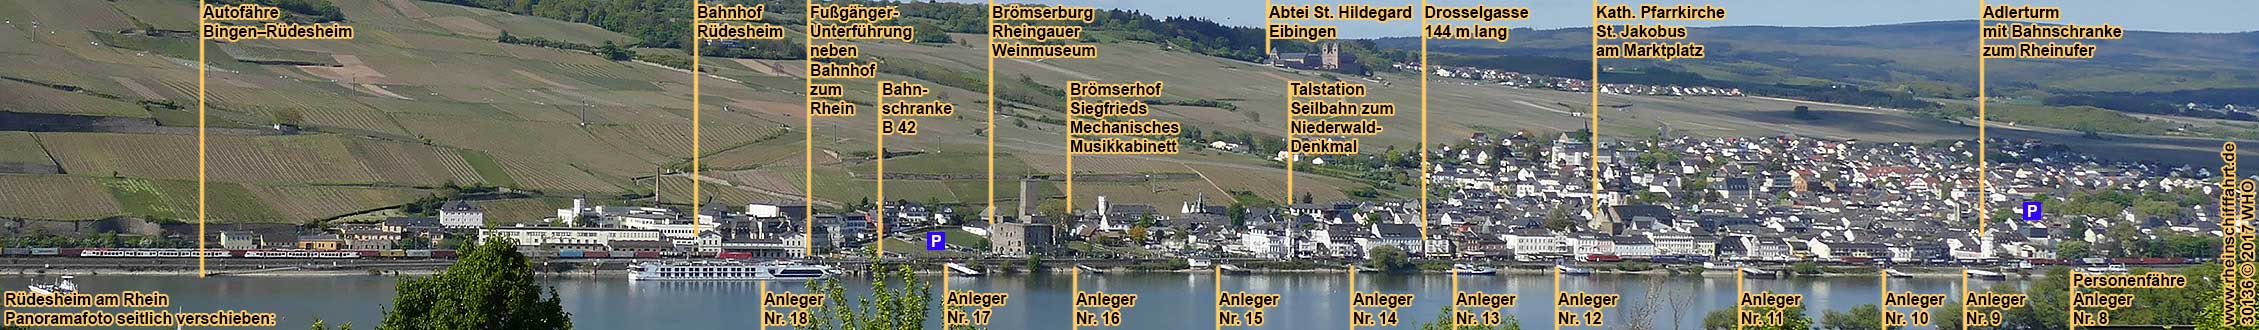 Rüdesheim am Rhein. Panoramafoto mit Schiffsanlegern.